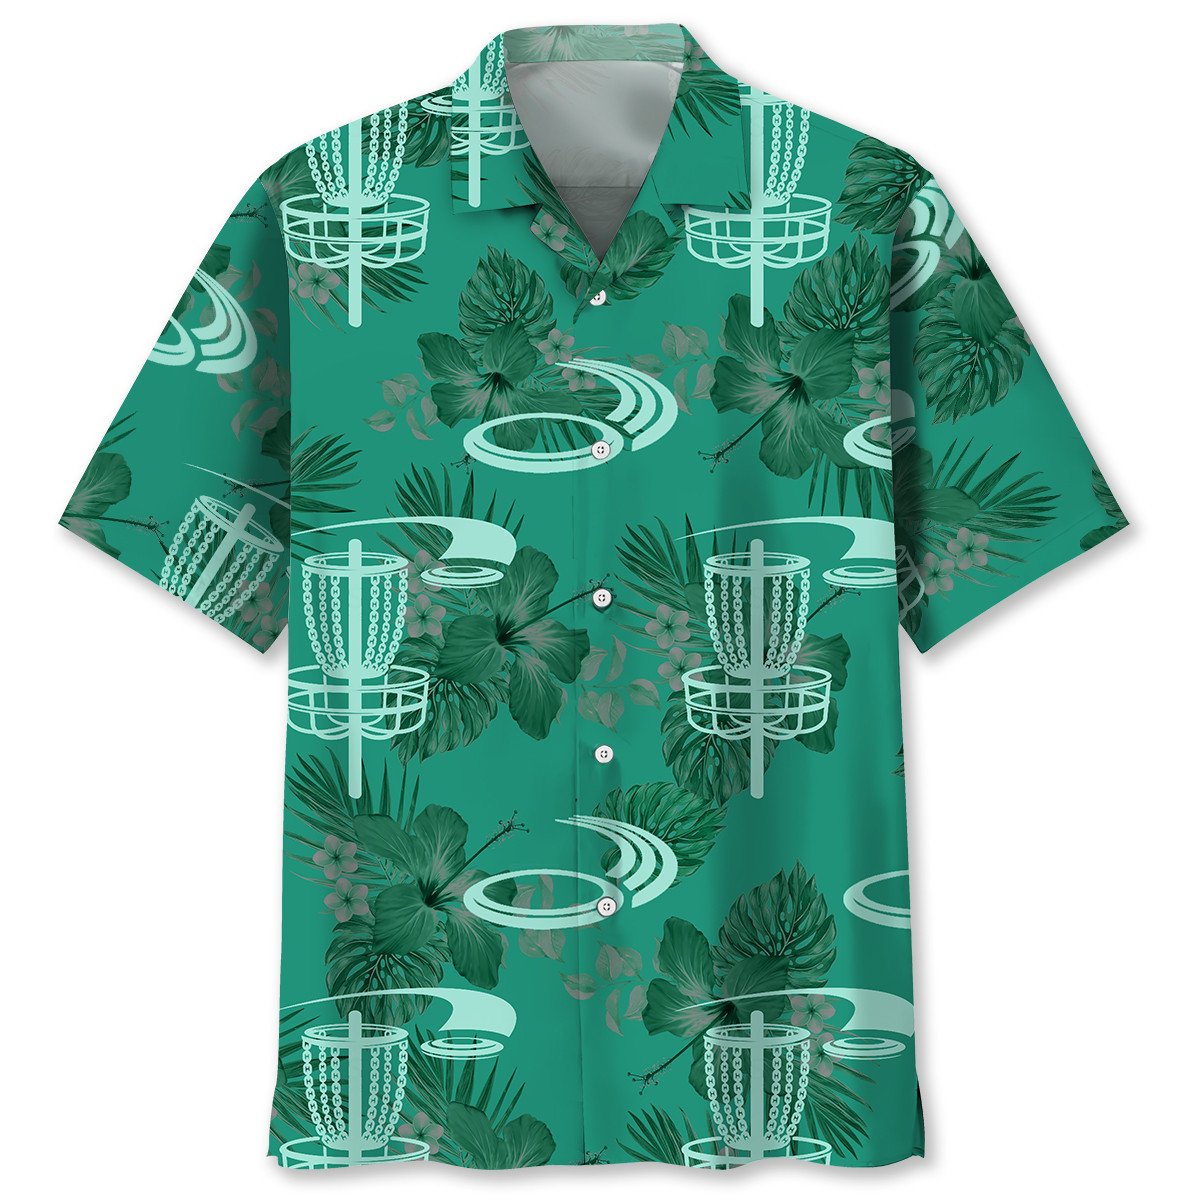 NEW Disc Golf Kelly Green Hawaiian Shirt